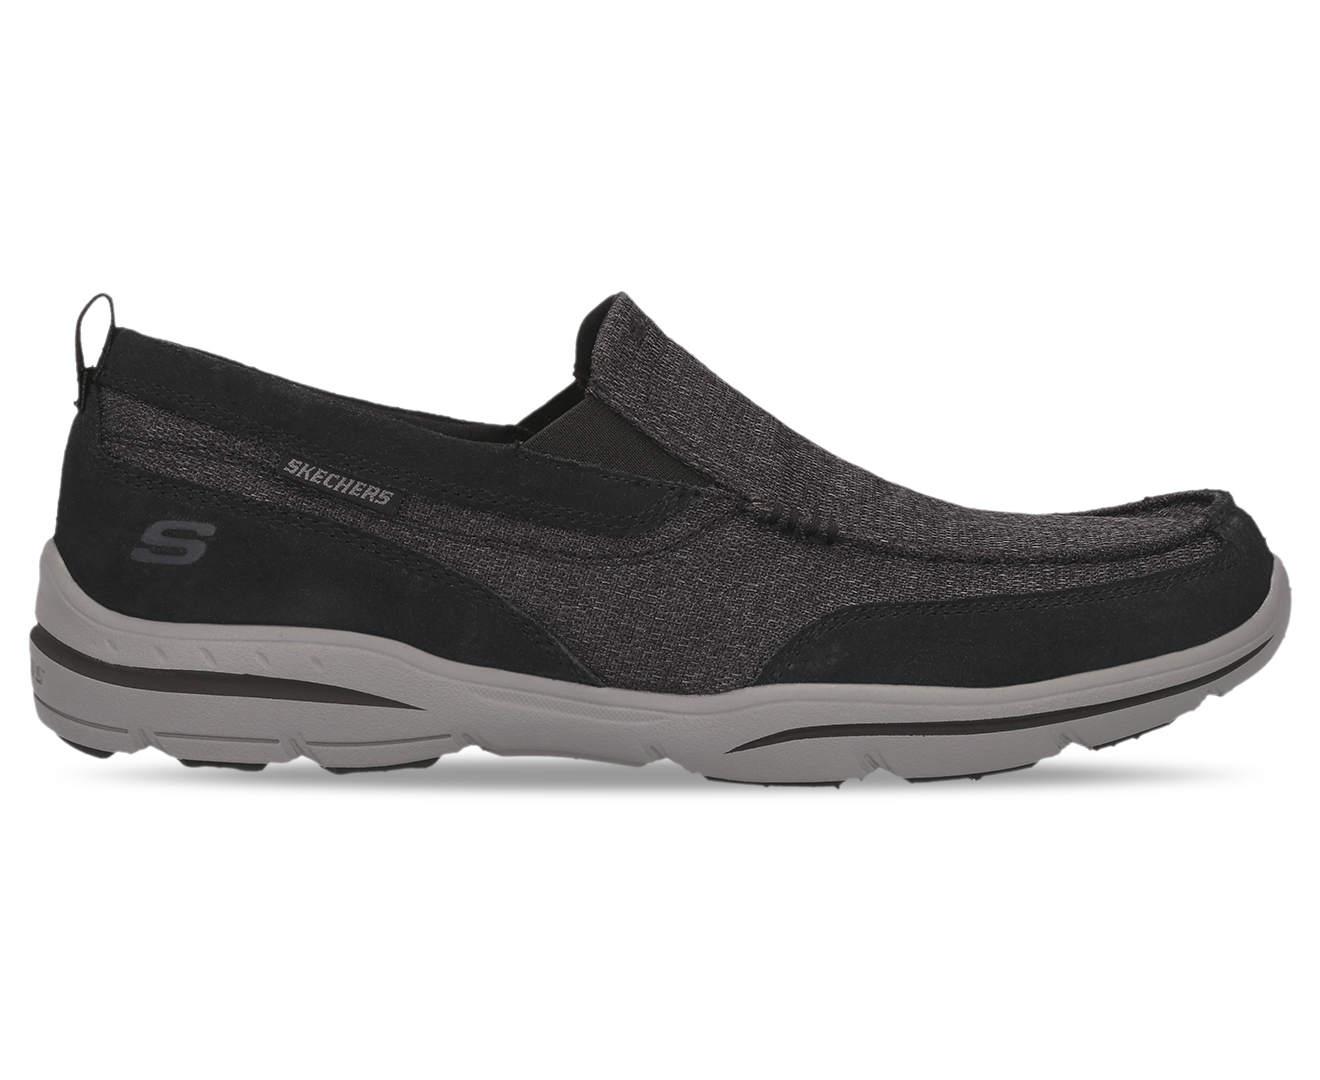 Skechers Men's Harper Mezo Slip On Casual Shoes - Black | Catch.co.nz